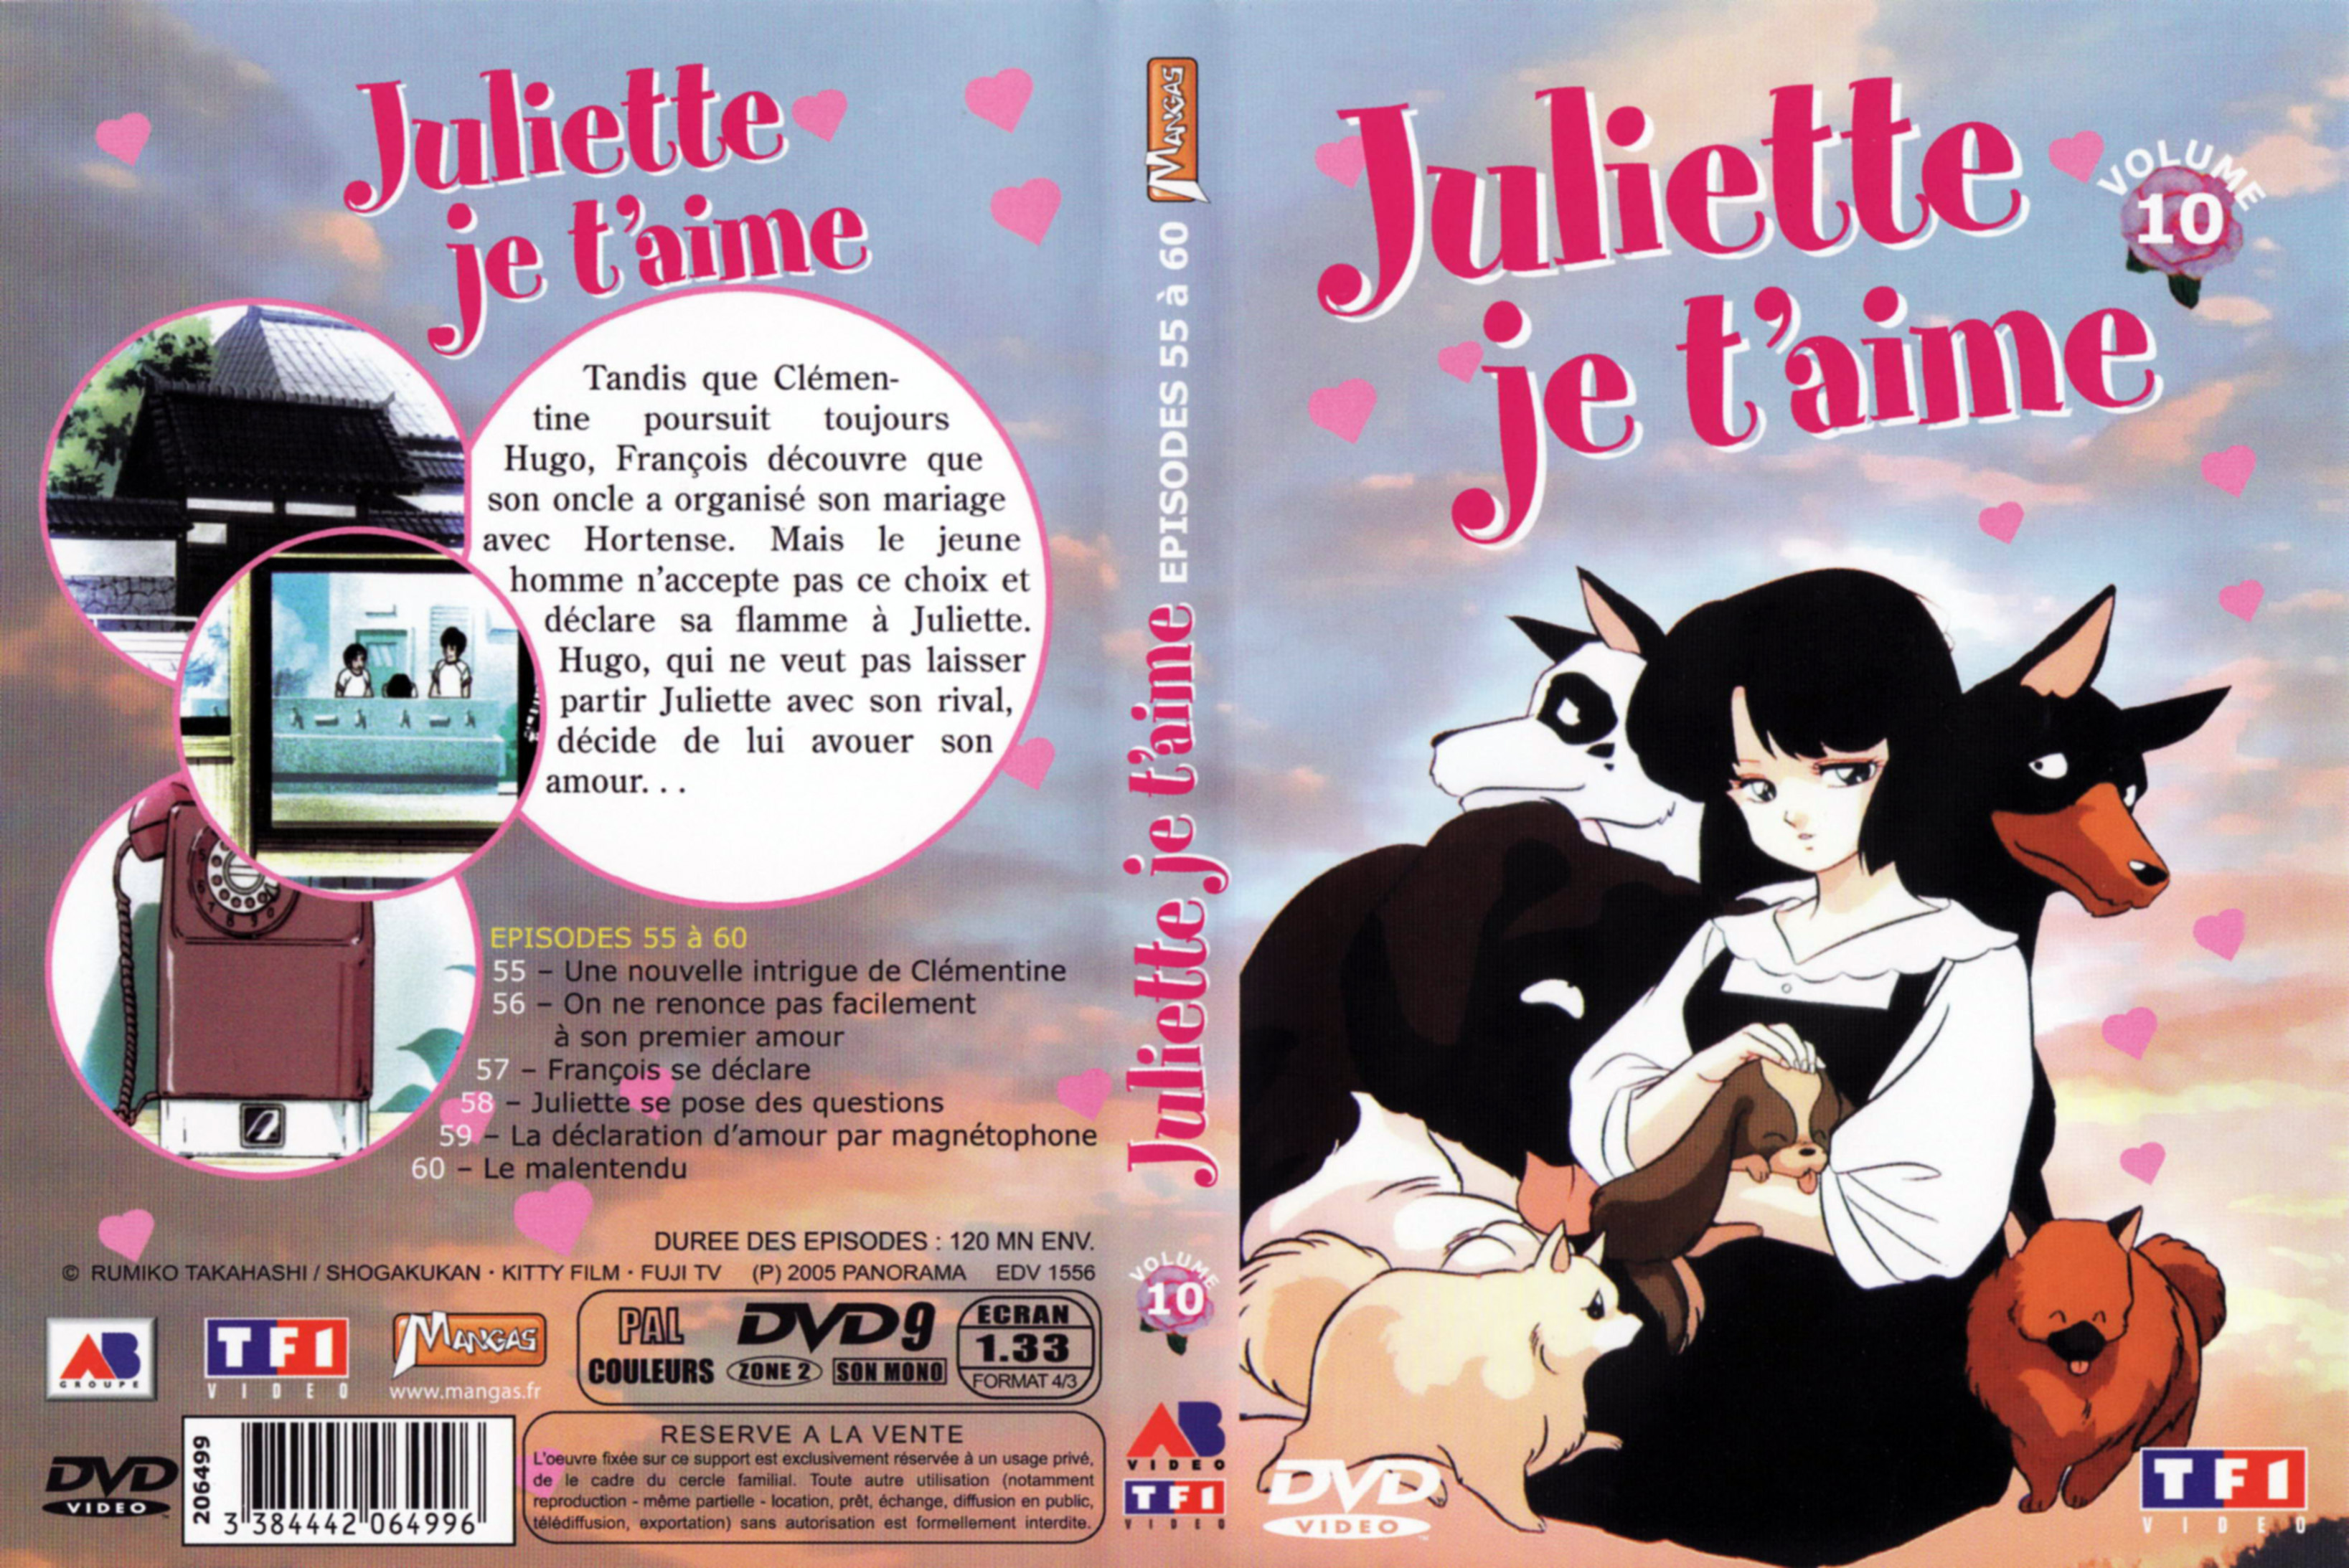 Jaquette DVD Juliette je t aime vol 10